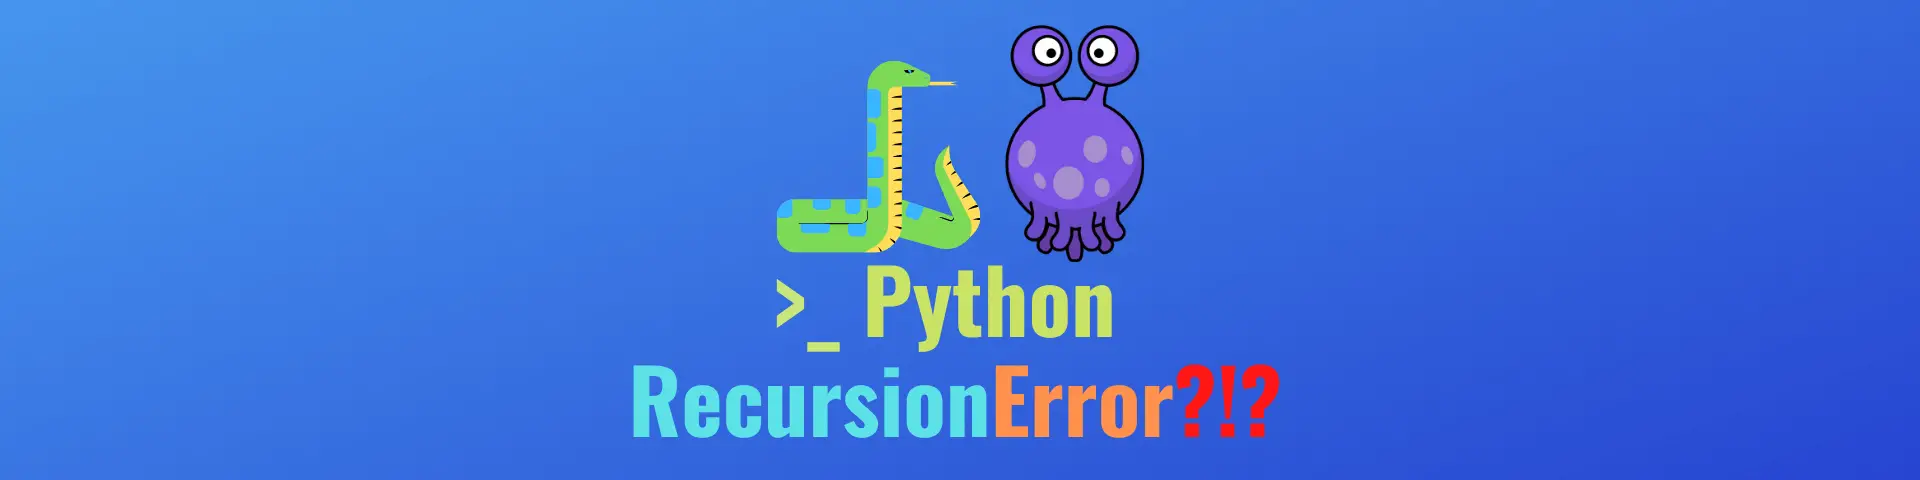 Python Recursion Error